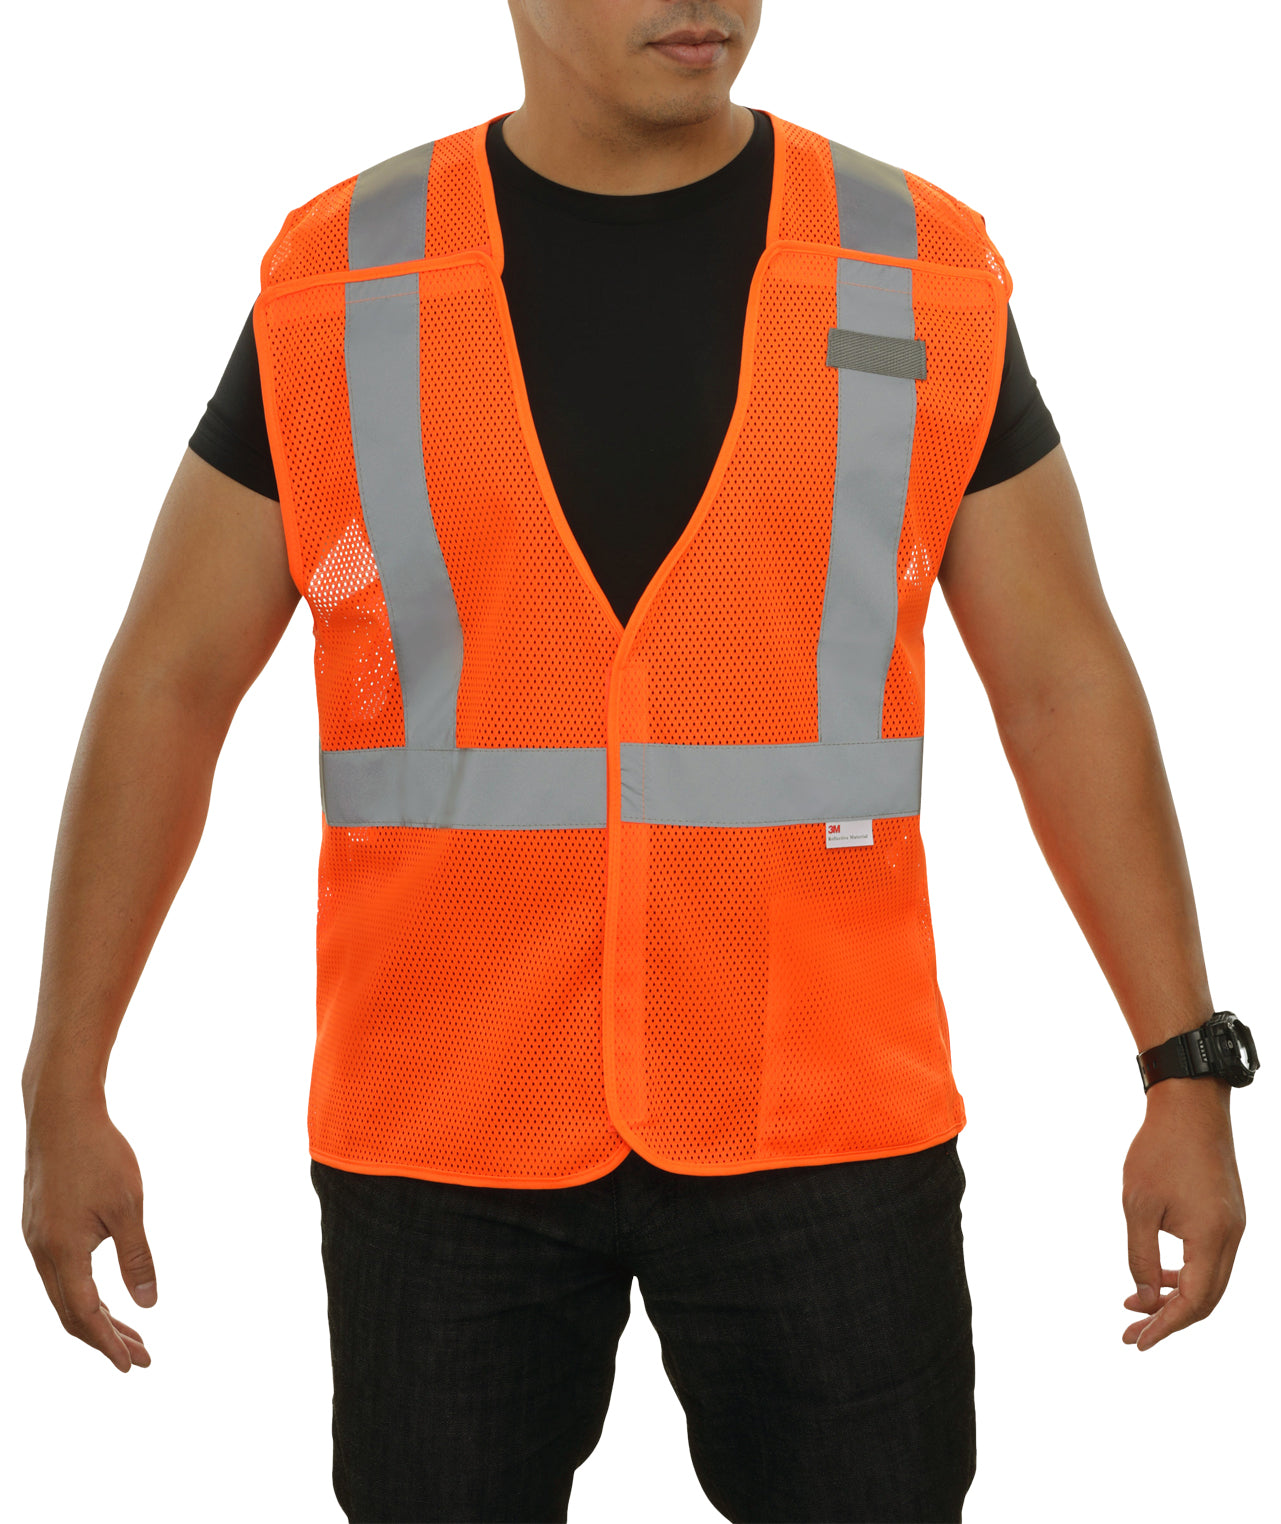 Mesh Hi-Vis Safety Vest - Single Size